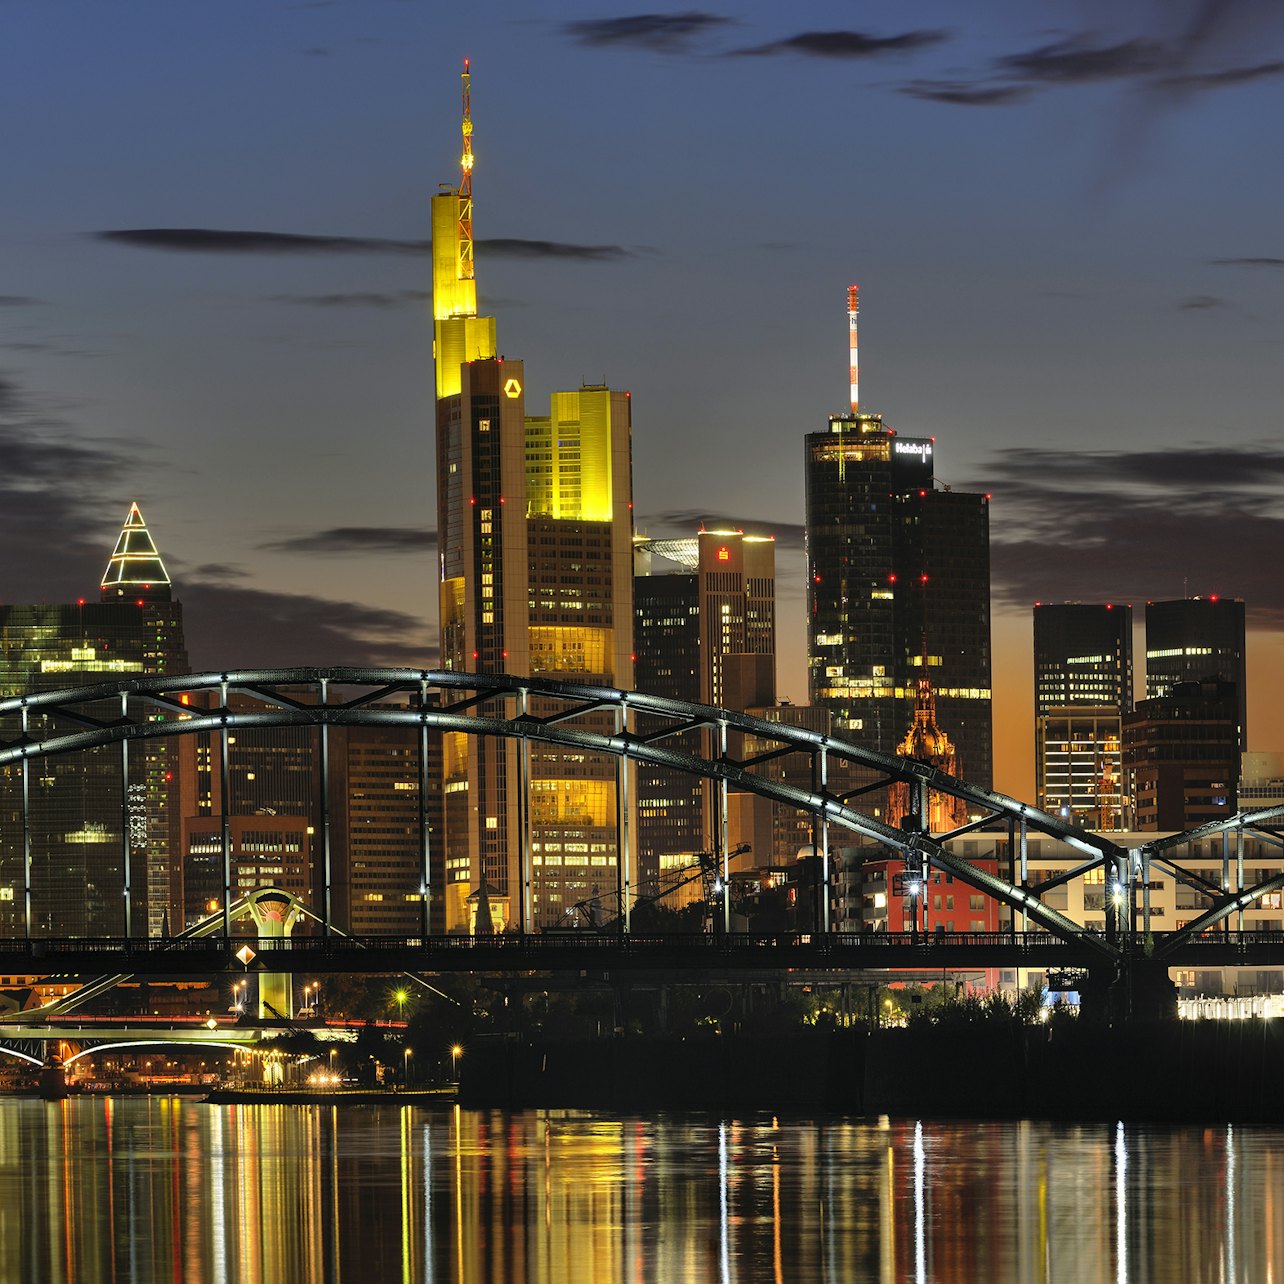 Frankfurt Card - Accommodations in Frankfurt